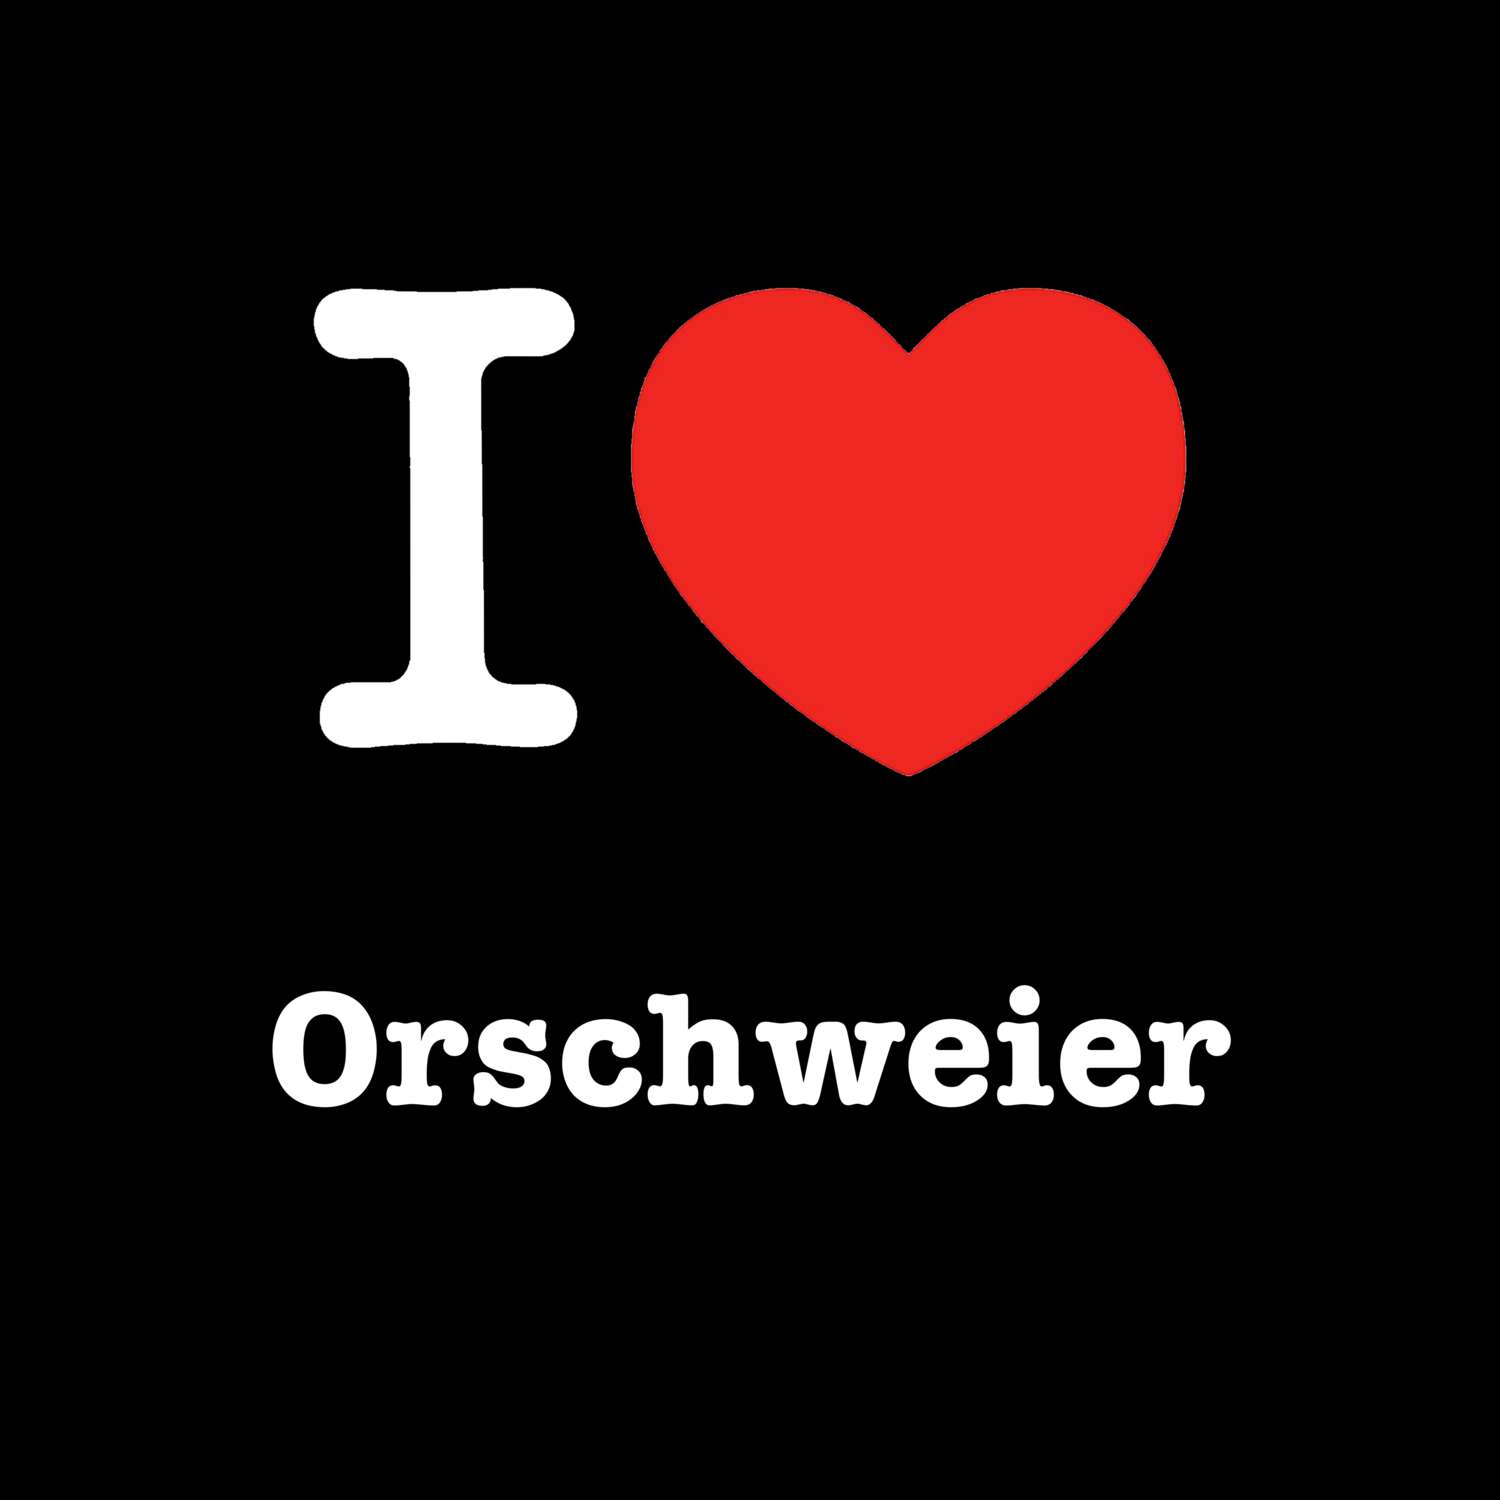 Orschweier T-Shirt »I love«